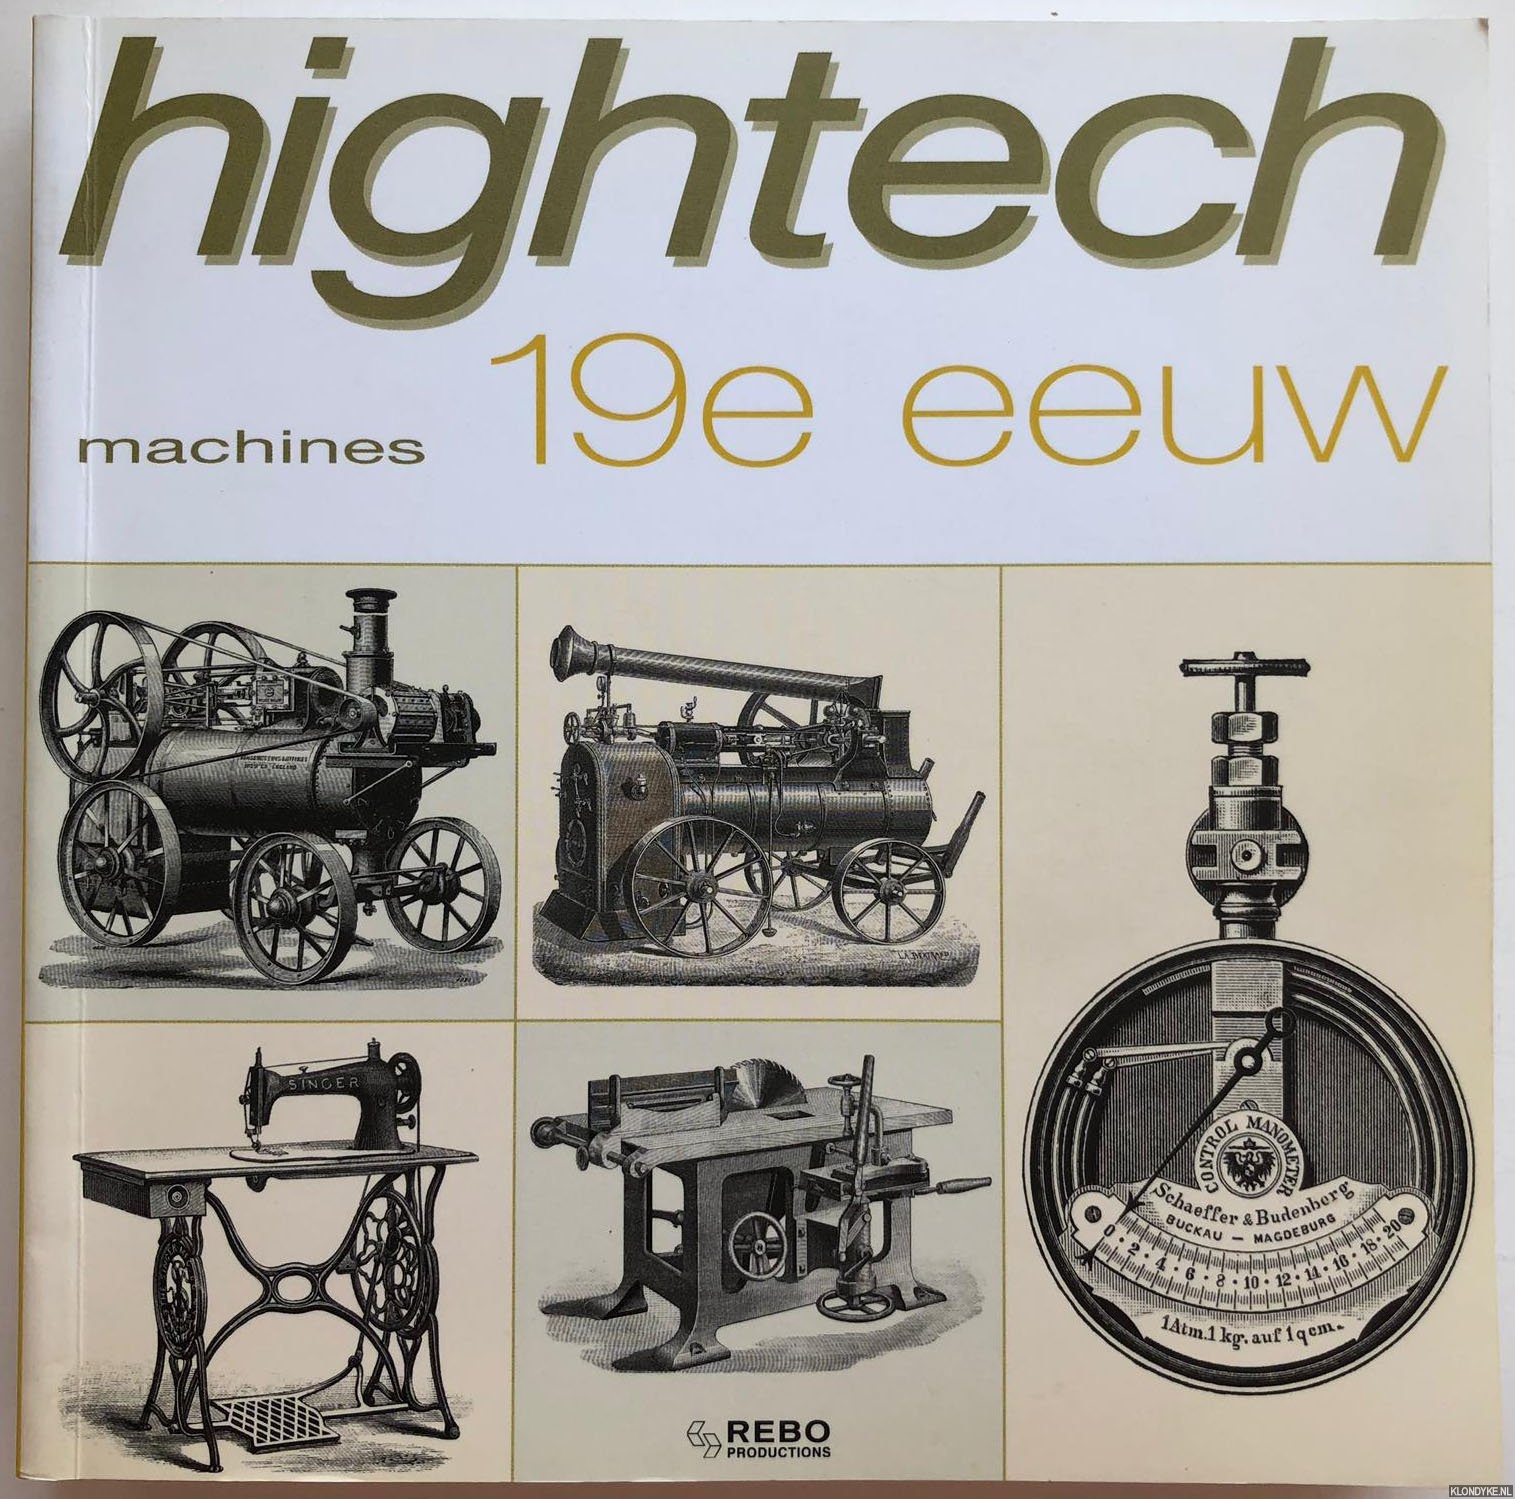 Santi-Mazzini, Giovanni - Hightech machines. 19e eeuw